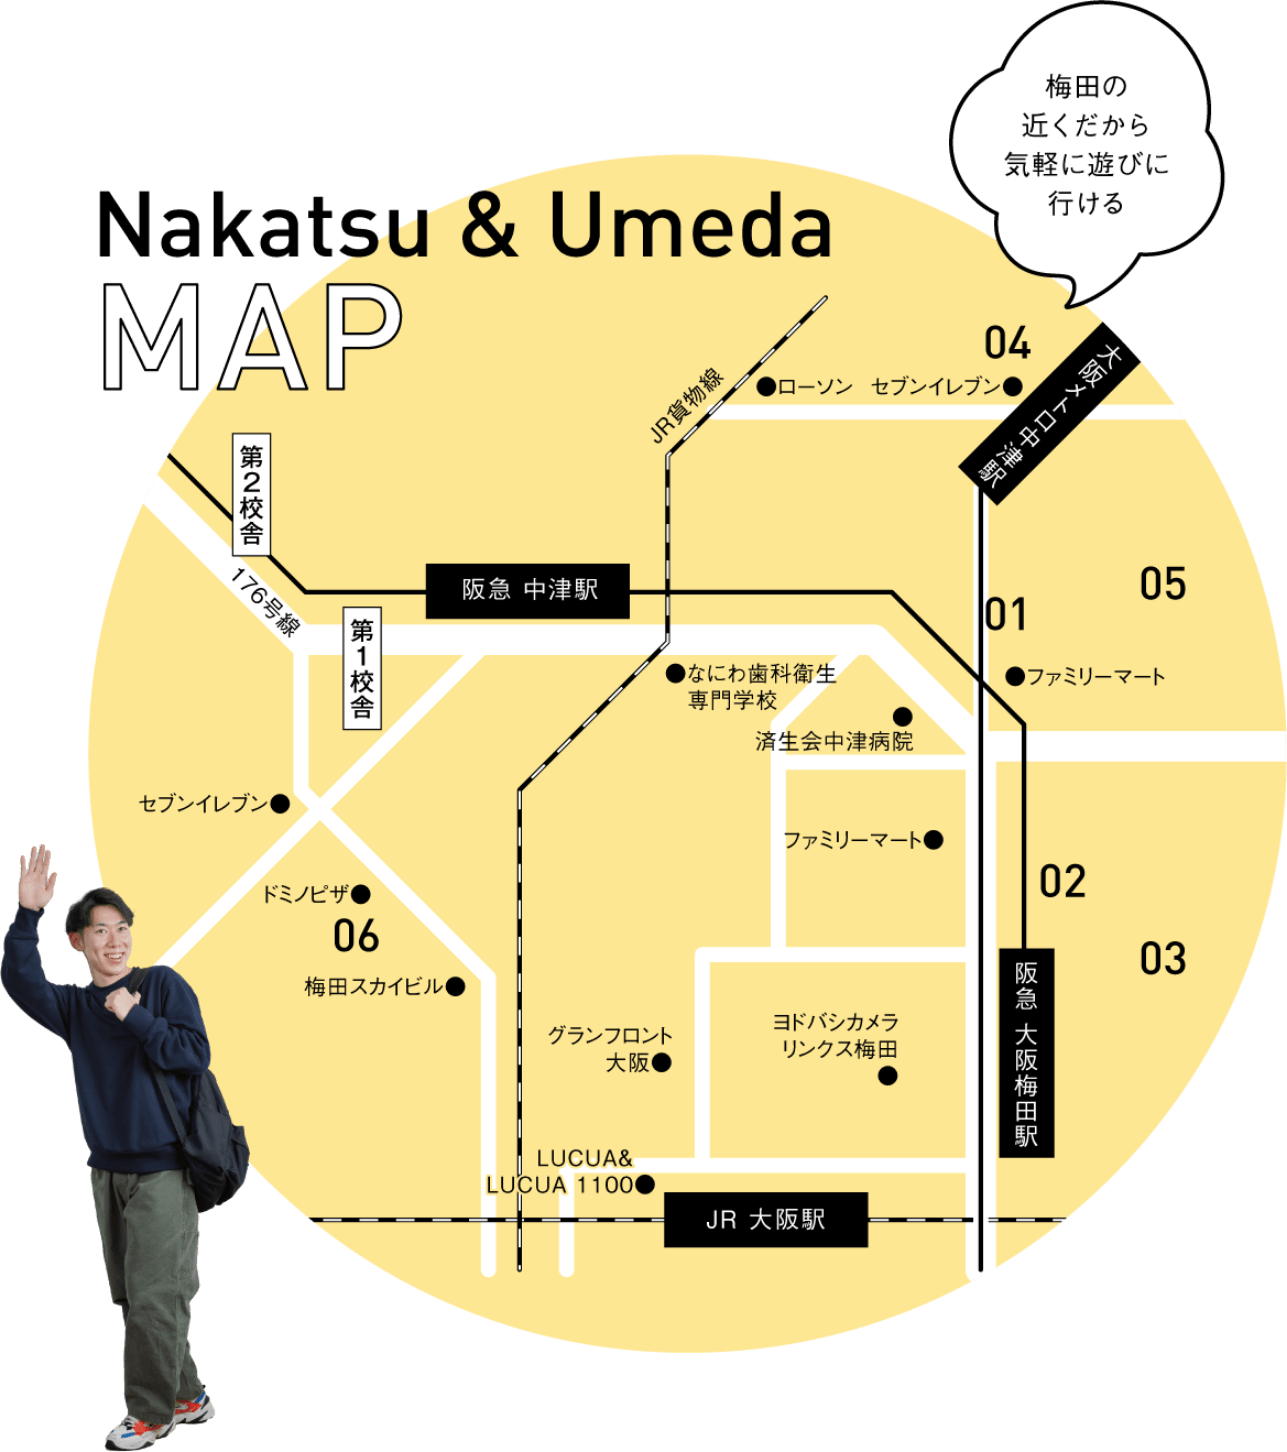 Nakatsu & Umeda MAP